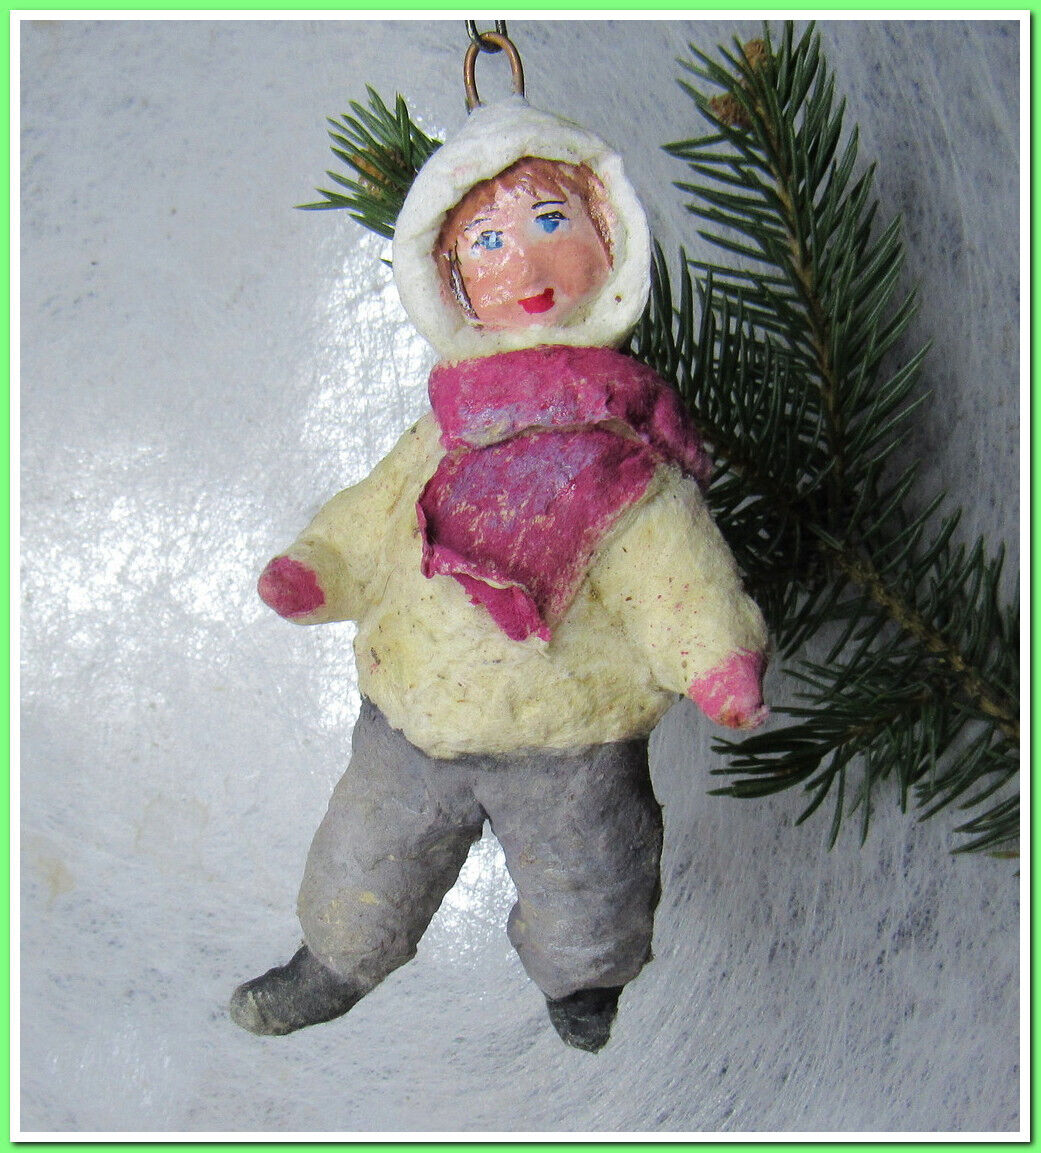 🎄Boy~Vintage antique Christmas spun cotton ornament figure #1212411